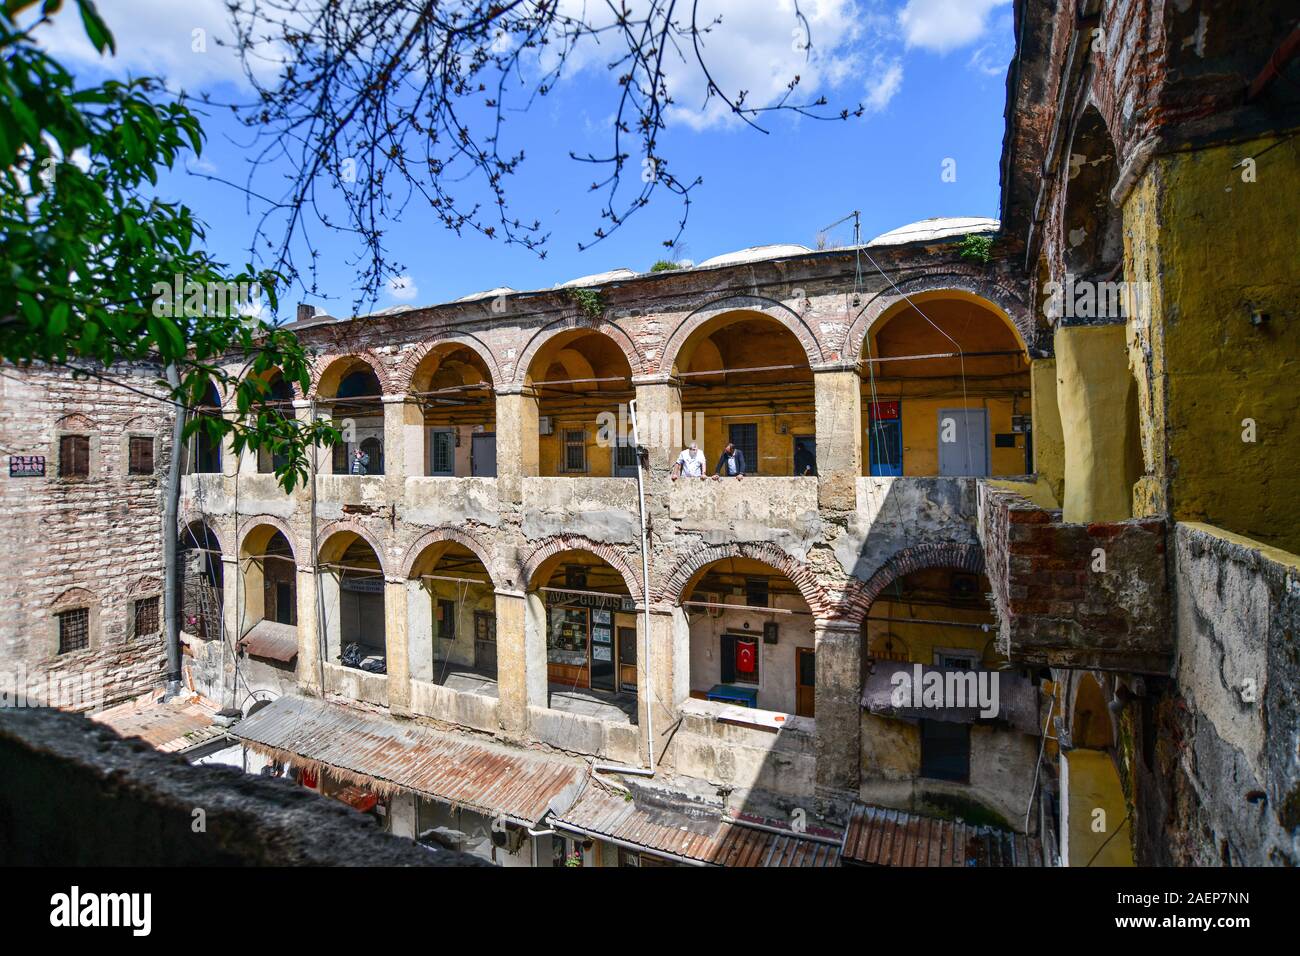 Türkei, Istanbul. Renovierte Tashan Karawanserei, auch bekannt als die Hekimhani oder hekim Han, im Einkaufsviertel von Laleli, zwischen Beyazit und Aks Stockfoto